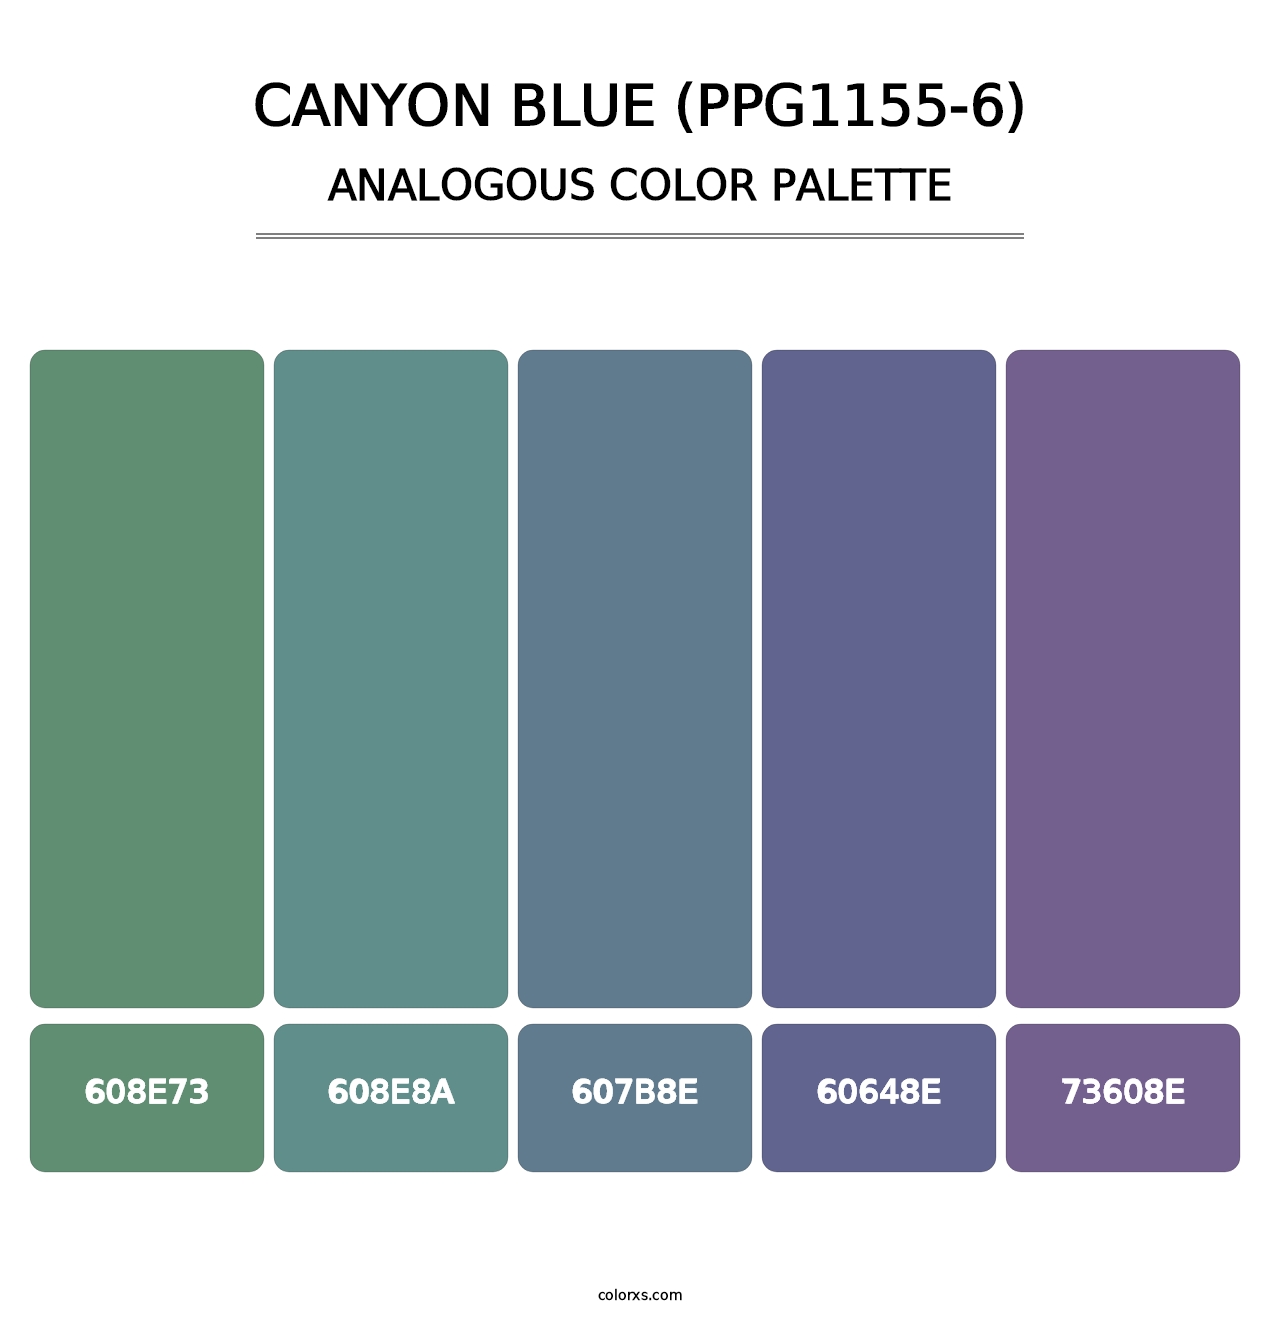 Canyon Blue (PPG1155-6) - Analogous Color Palette